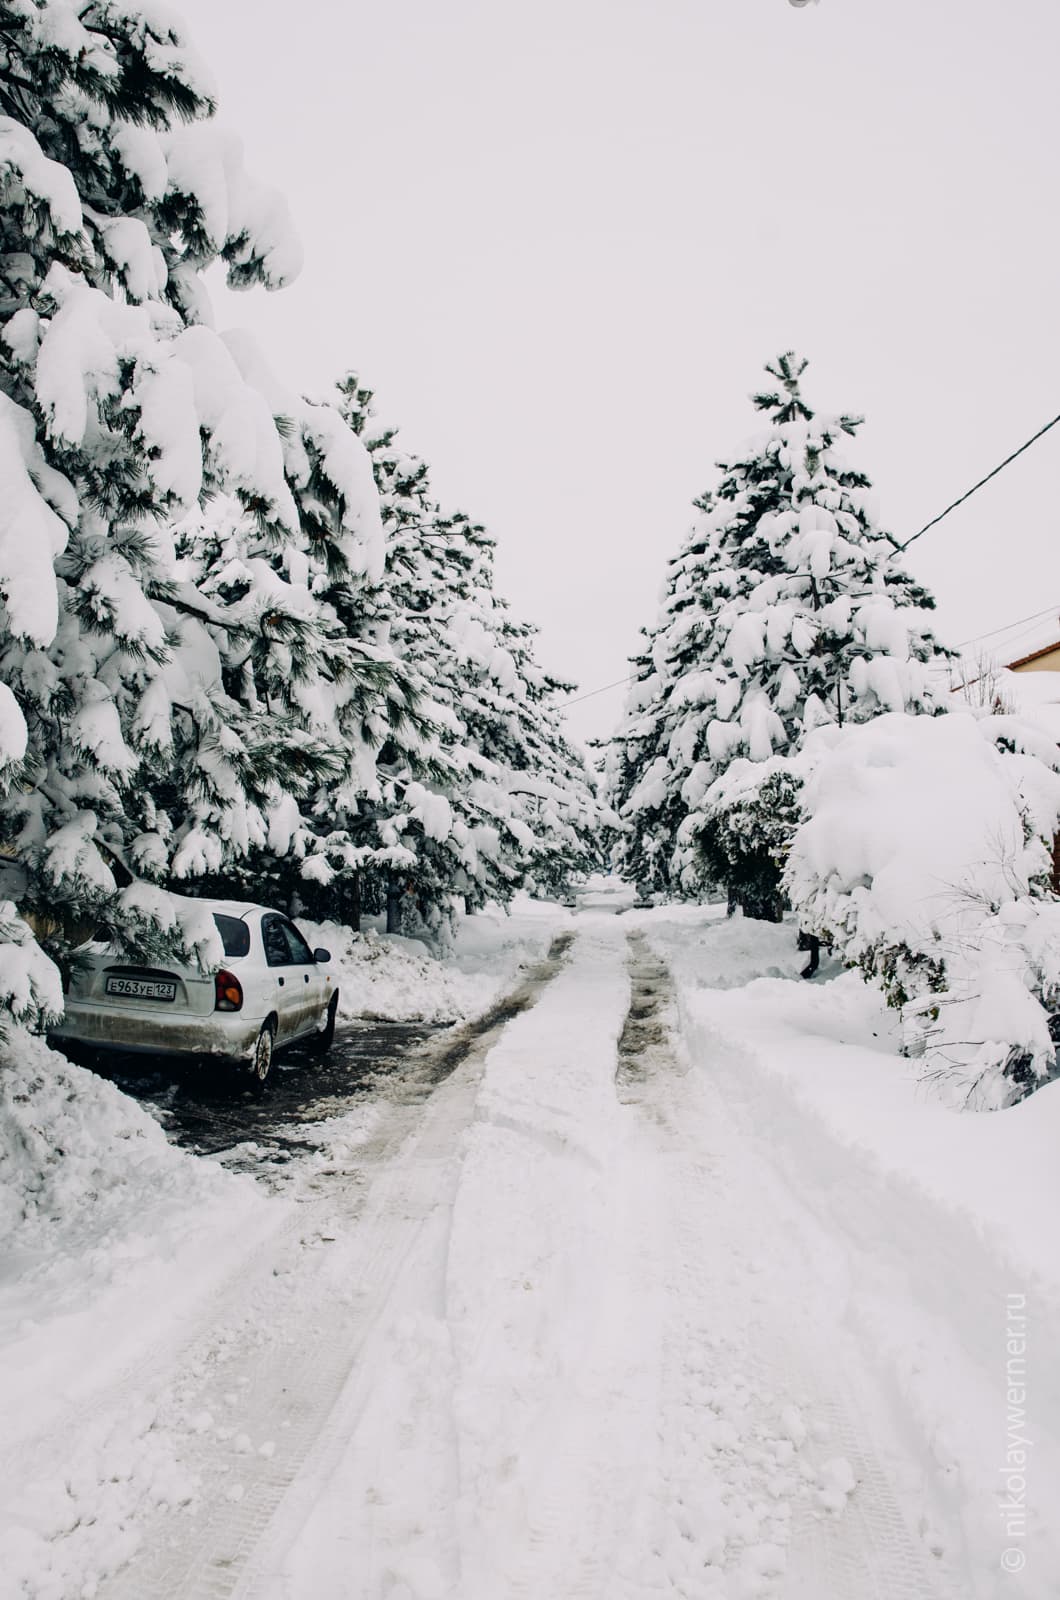 Узкая улочка в снегу. По краям стоят массивные ели, из-за которых совсем не видно домов. Под одной из них, справа, укрылся белый автомобиль